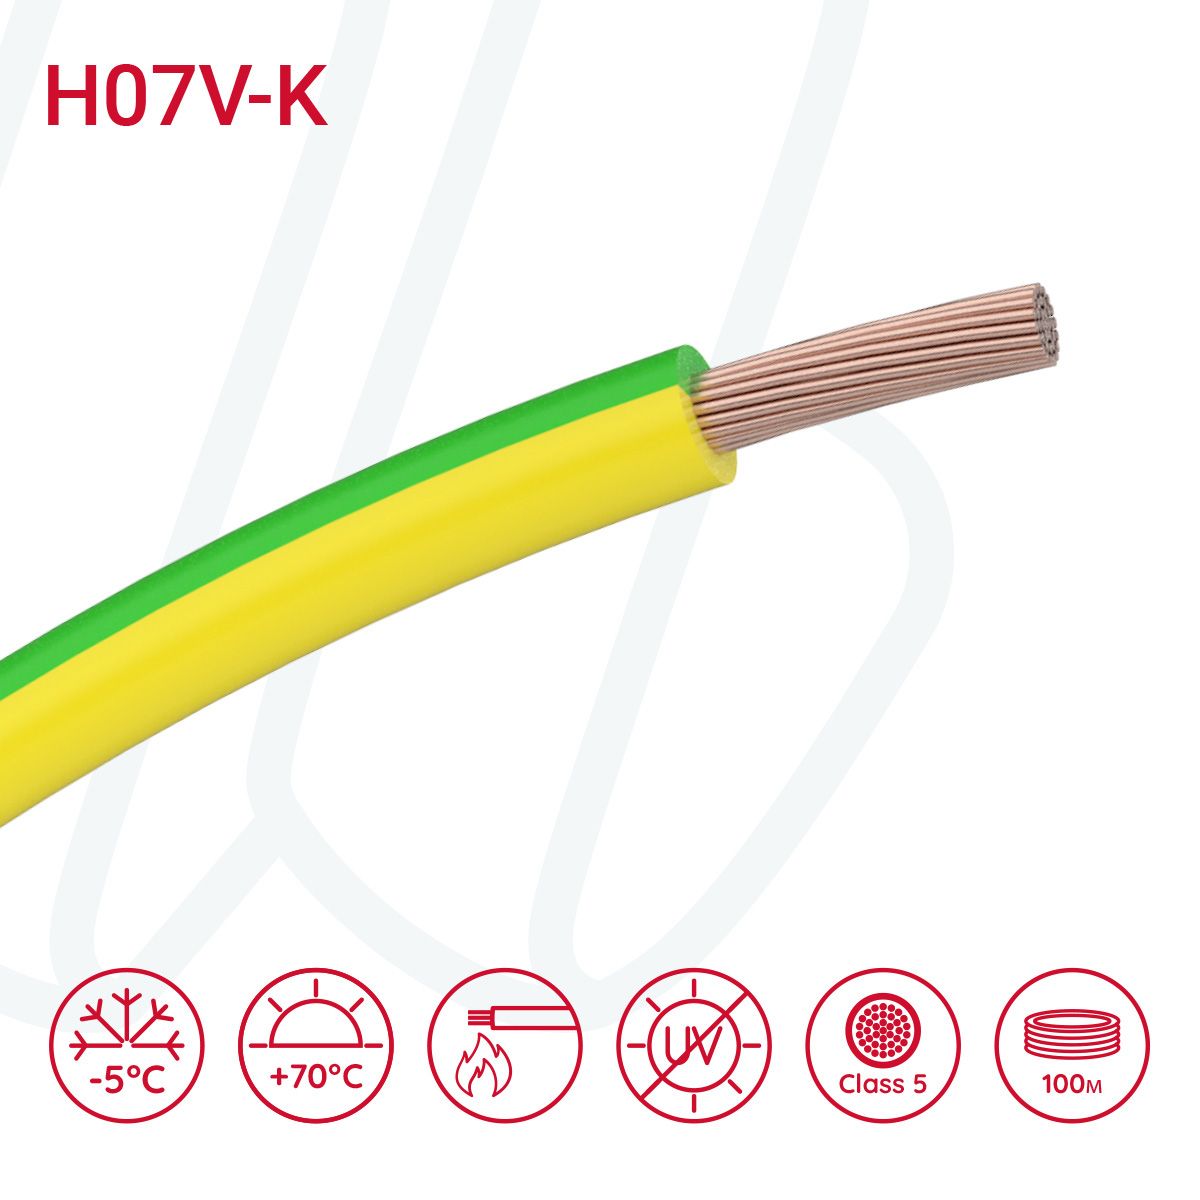 Провід монтажний гнучкий H07V-K 6 мм² жовто-зелений, 01, 6